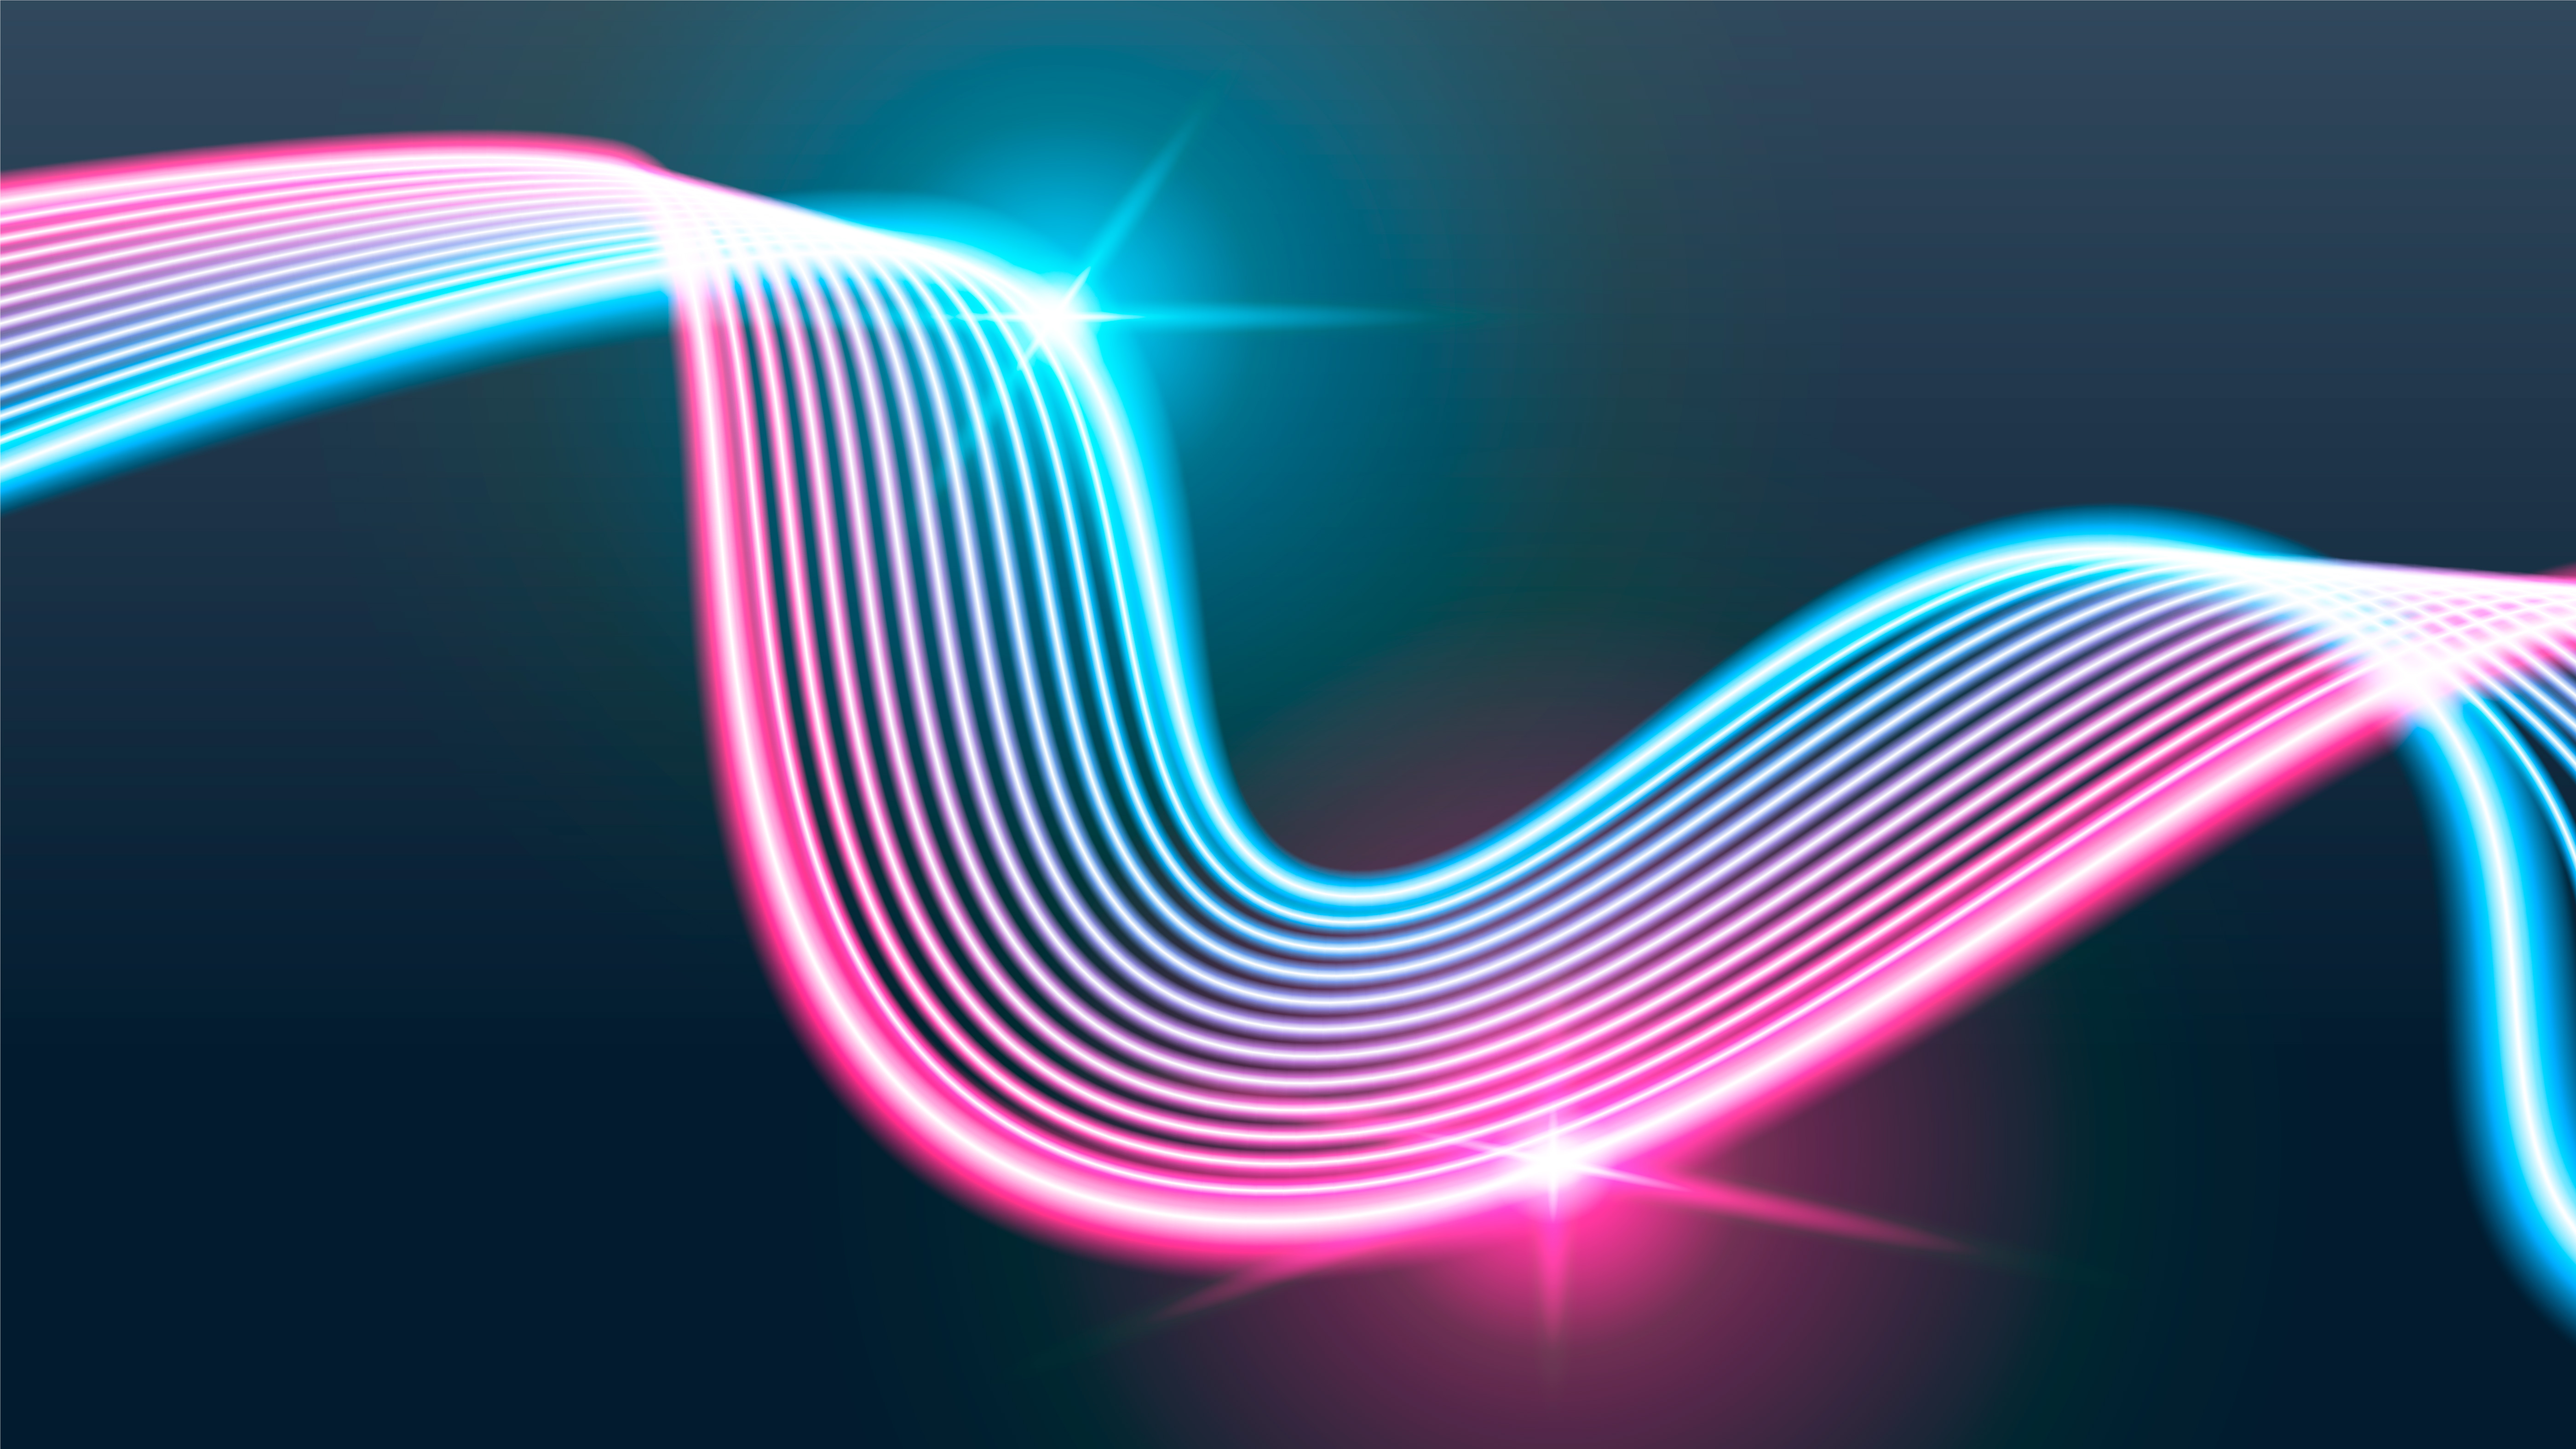 Swirl neon lights background - Download Free Vectors ...